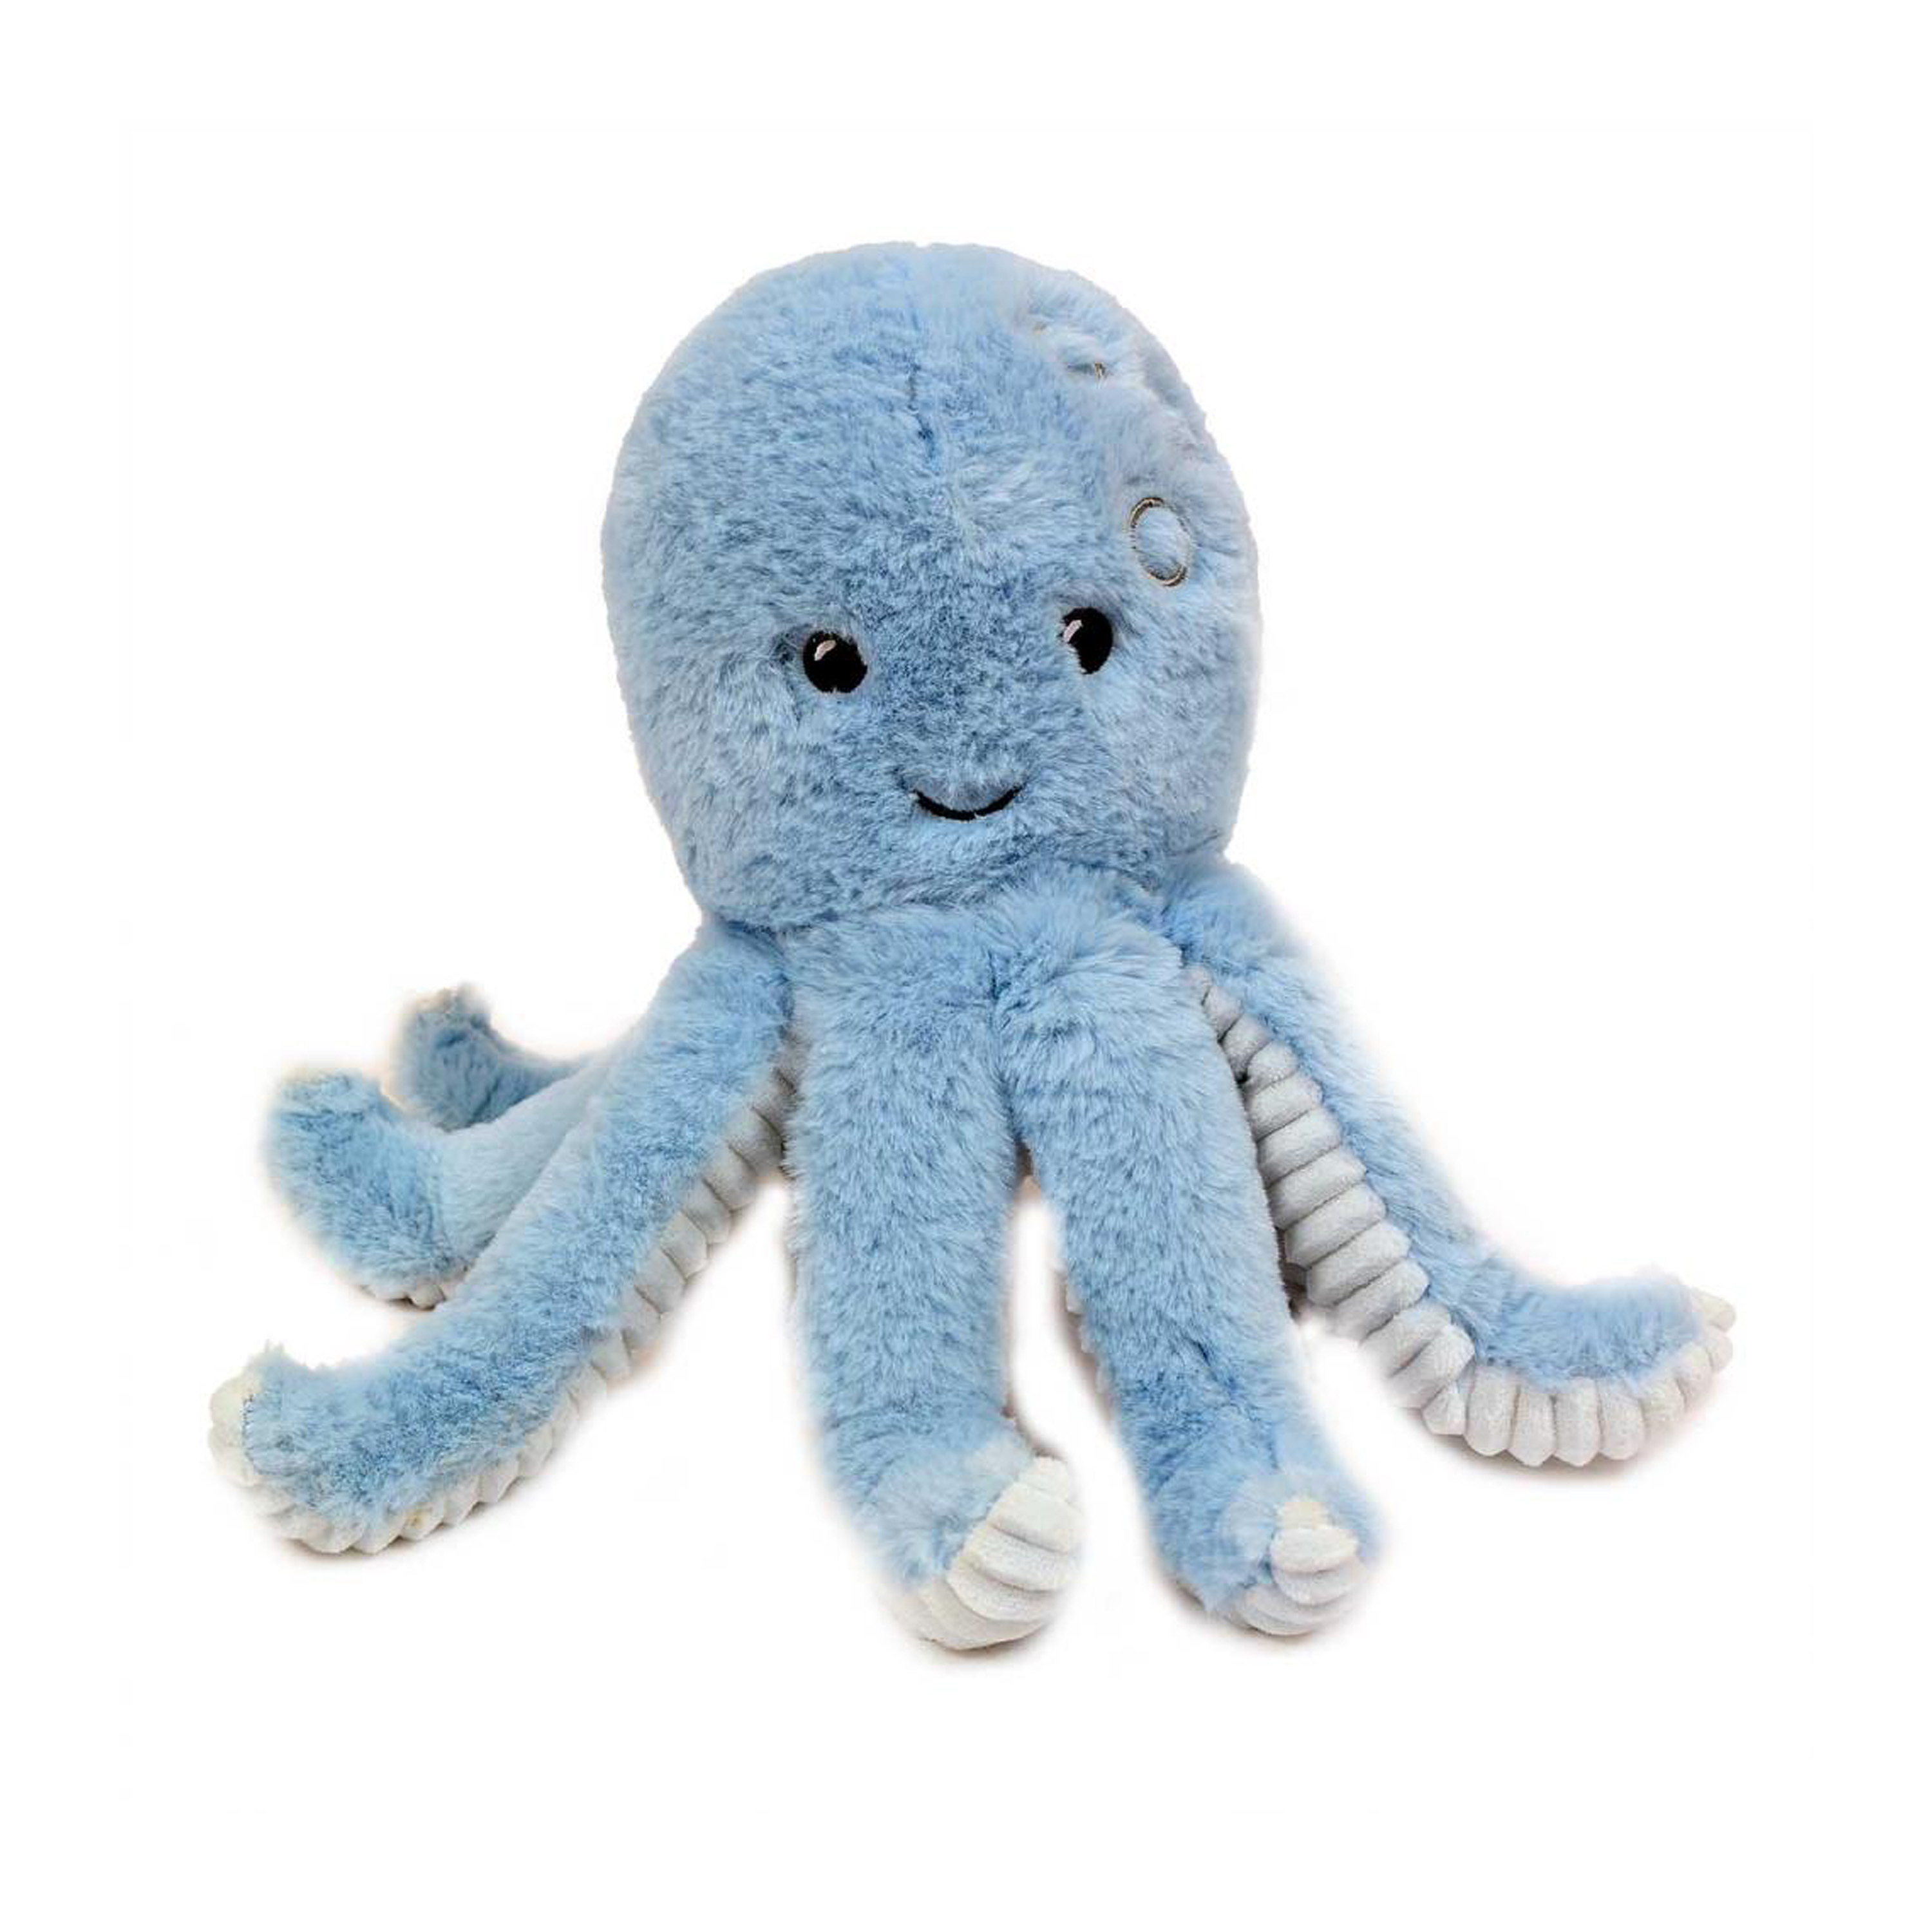 Knuffeldier Inktvis/octopus - zachte pluche stof - premium kwaliteit knuffels - blauw - 19 cm -